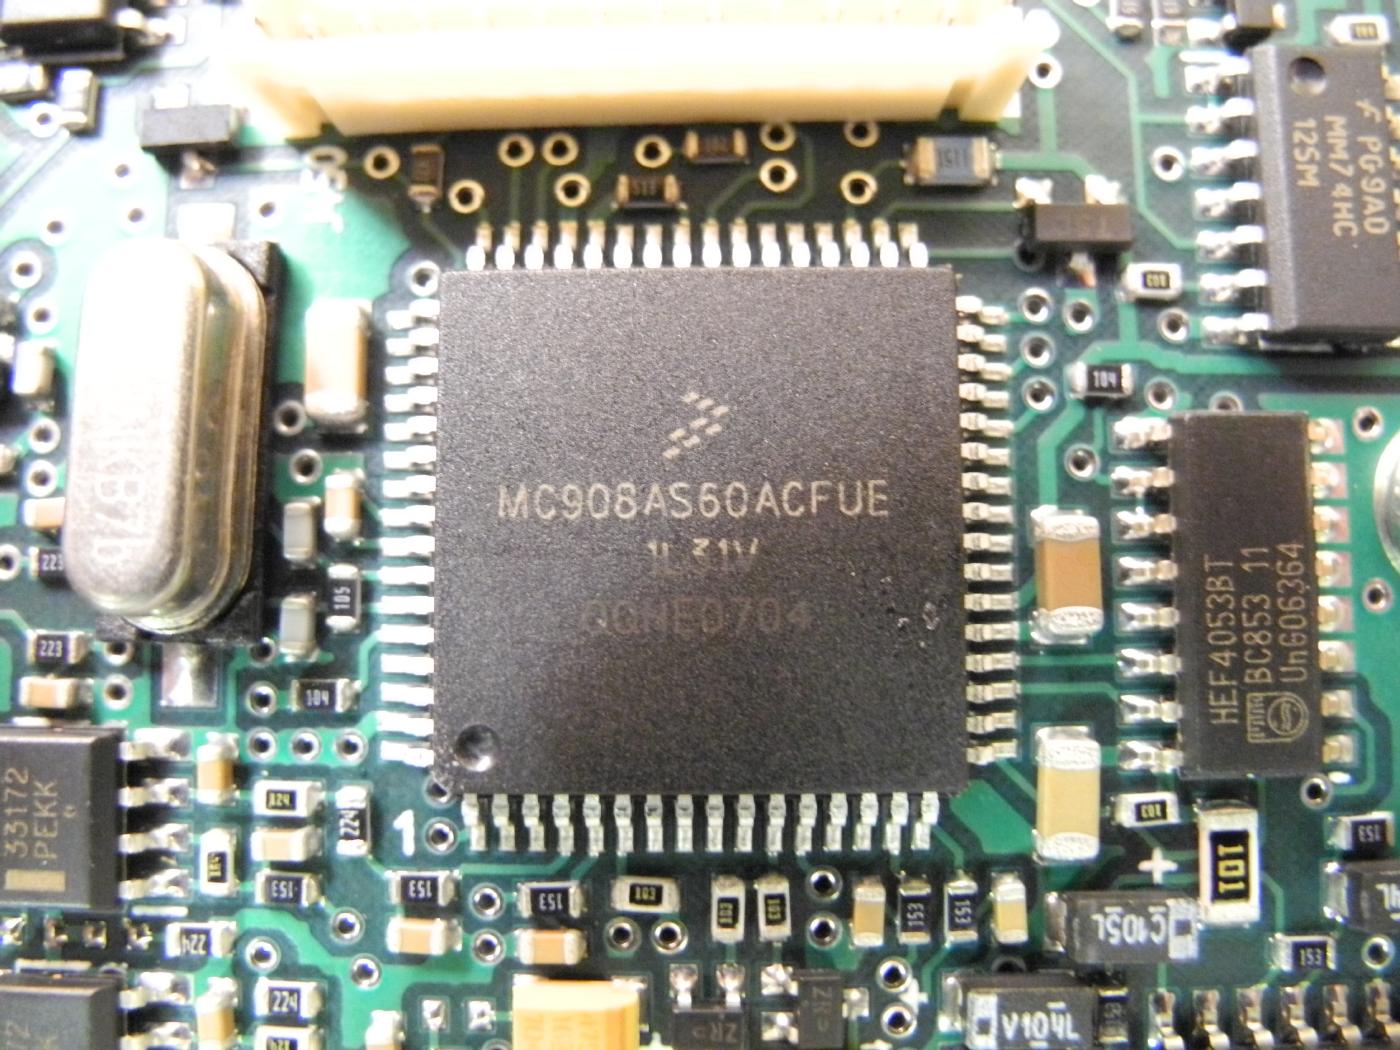 Freescale MC908AS60ACFUE. 